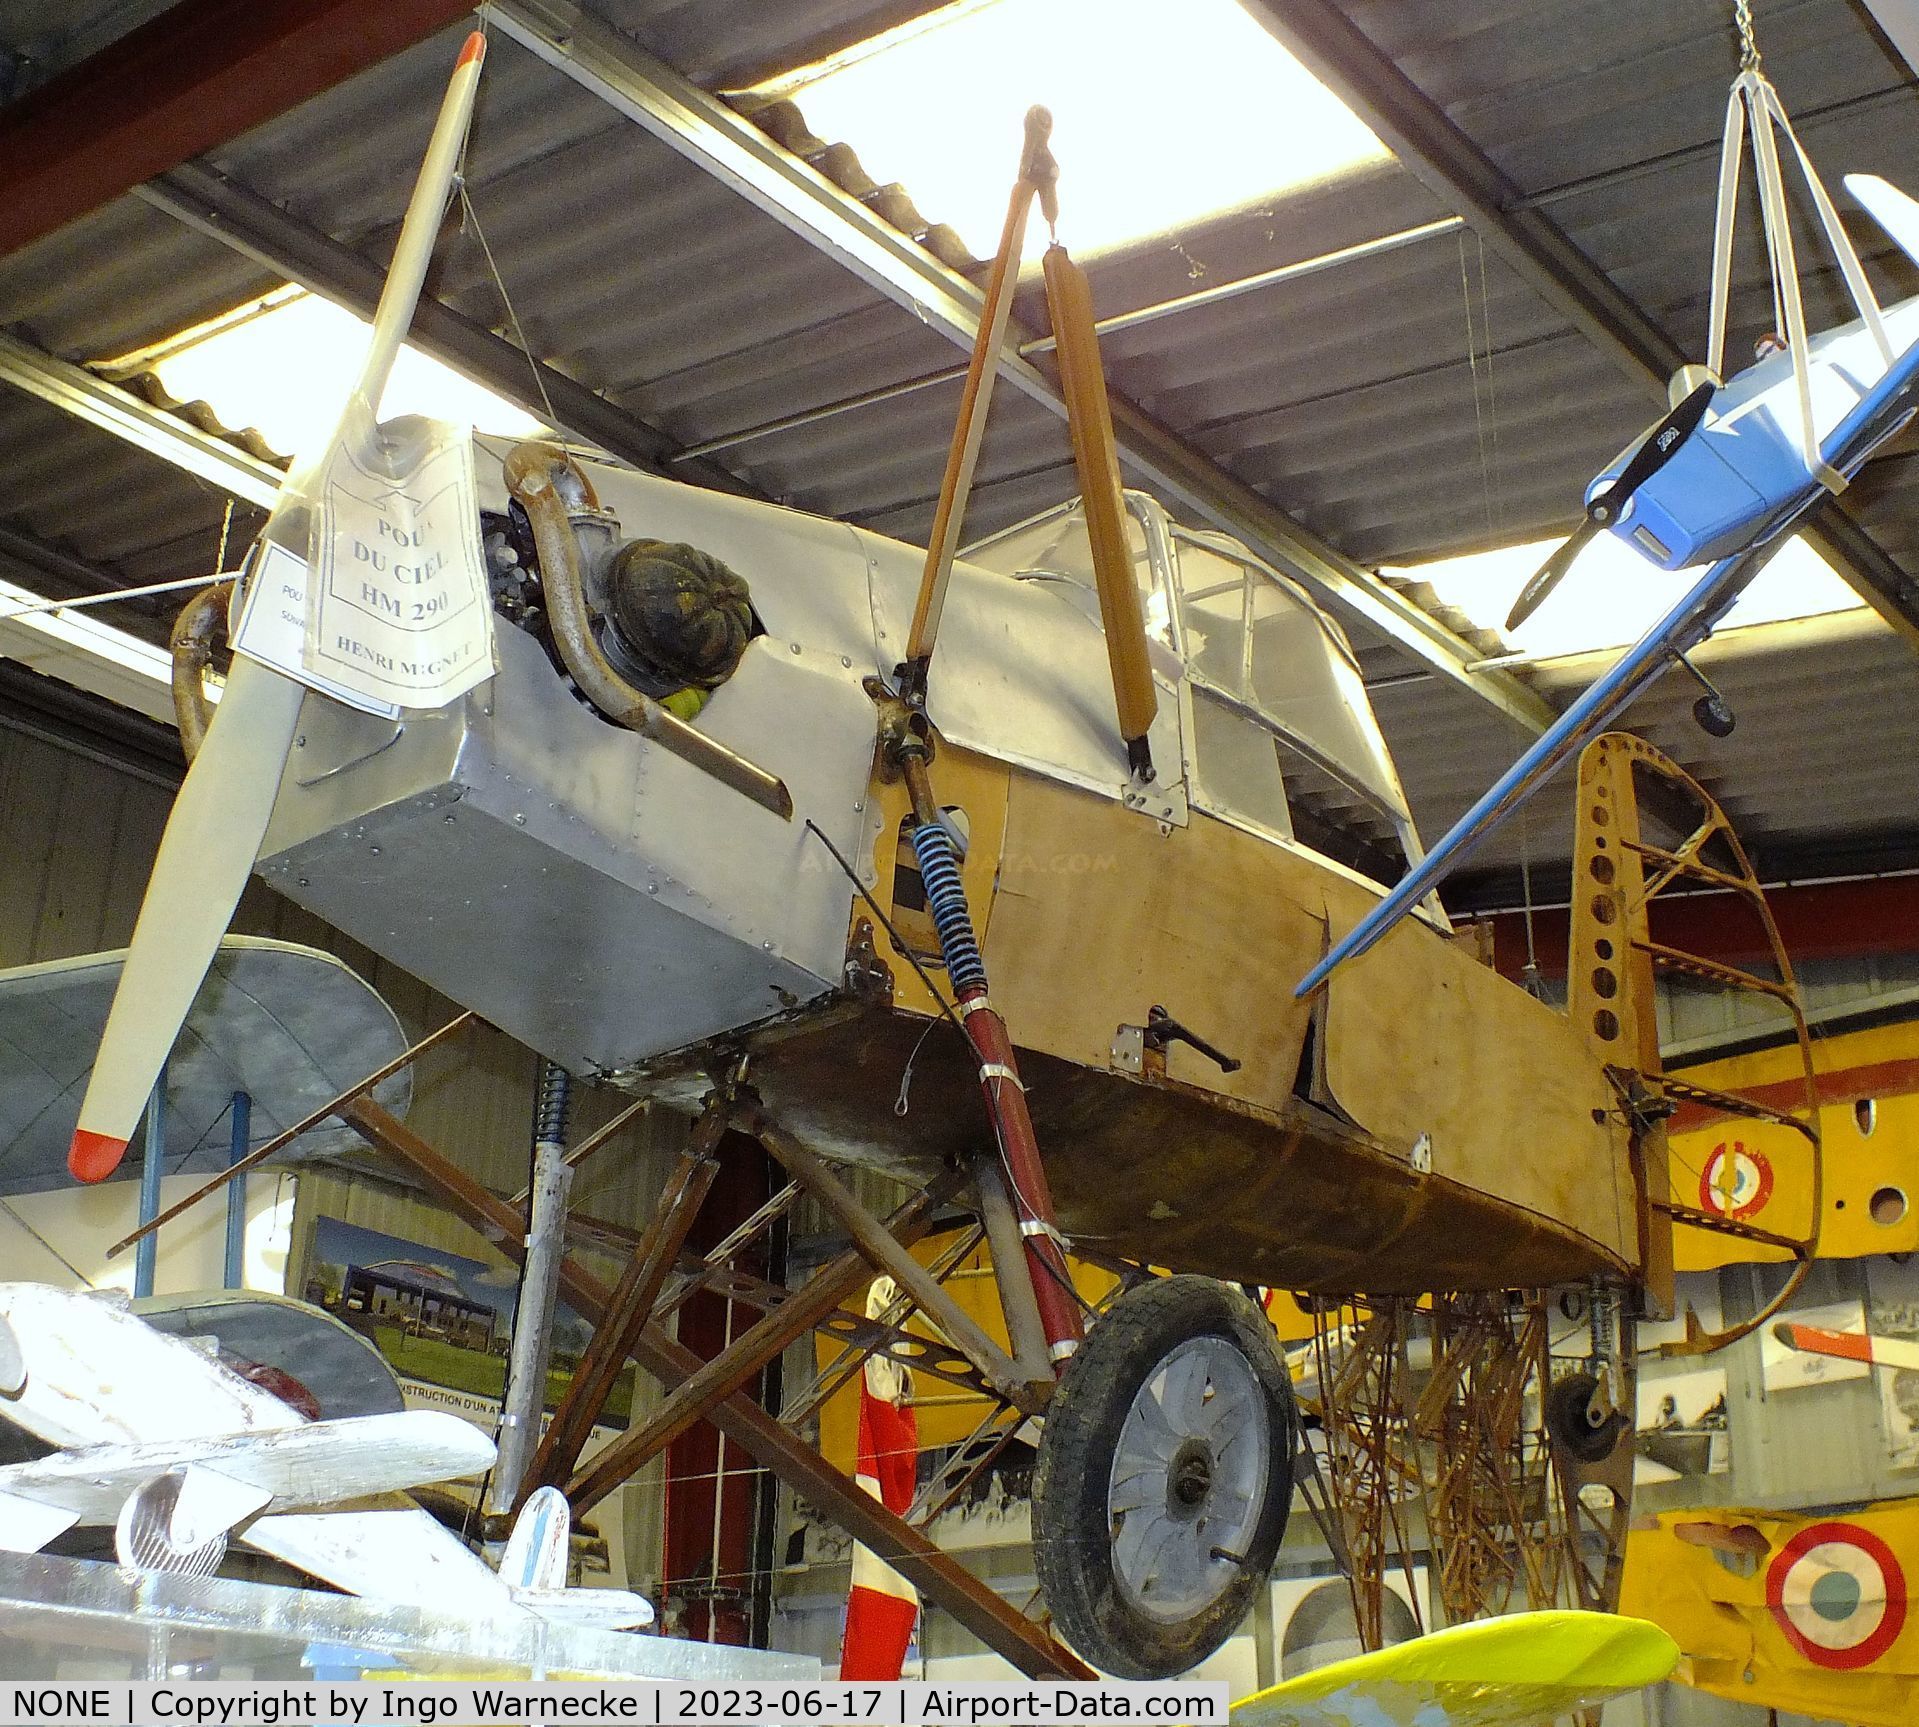 NONE, Mignet HM.290 C/N not found_HM.290, Mignet HM.290 (incomplete fuselage, elements of wing) at the Musee de l'Epopee de l'Industrie et de l'Aeronautique, Albert